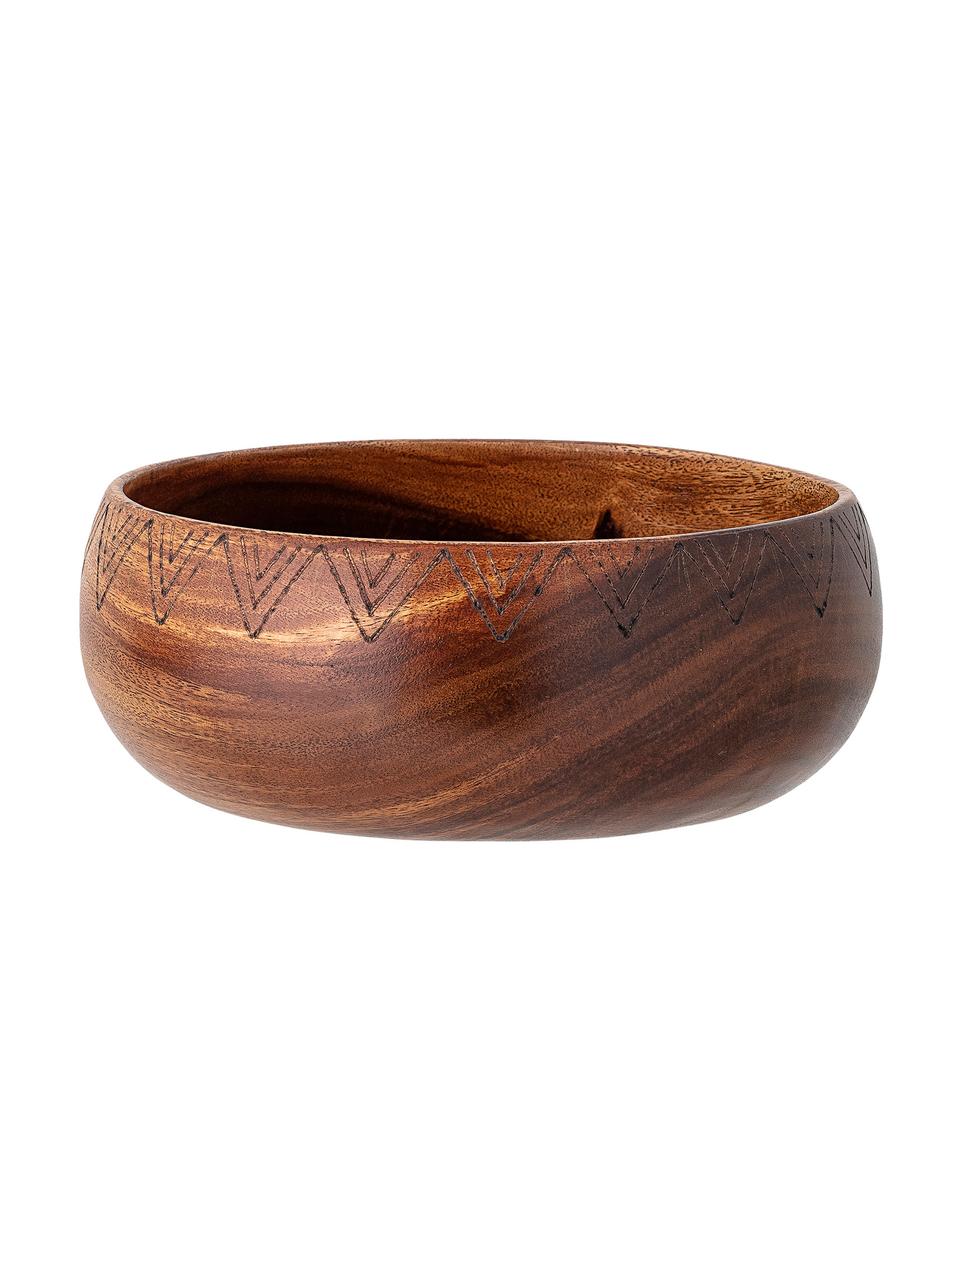 Bote de madera Femke, Madera de acacia, aceitado, ratán, Marrón, Ø 24 cm x Al 10 cm